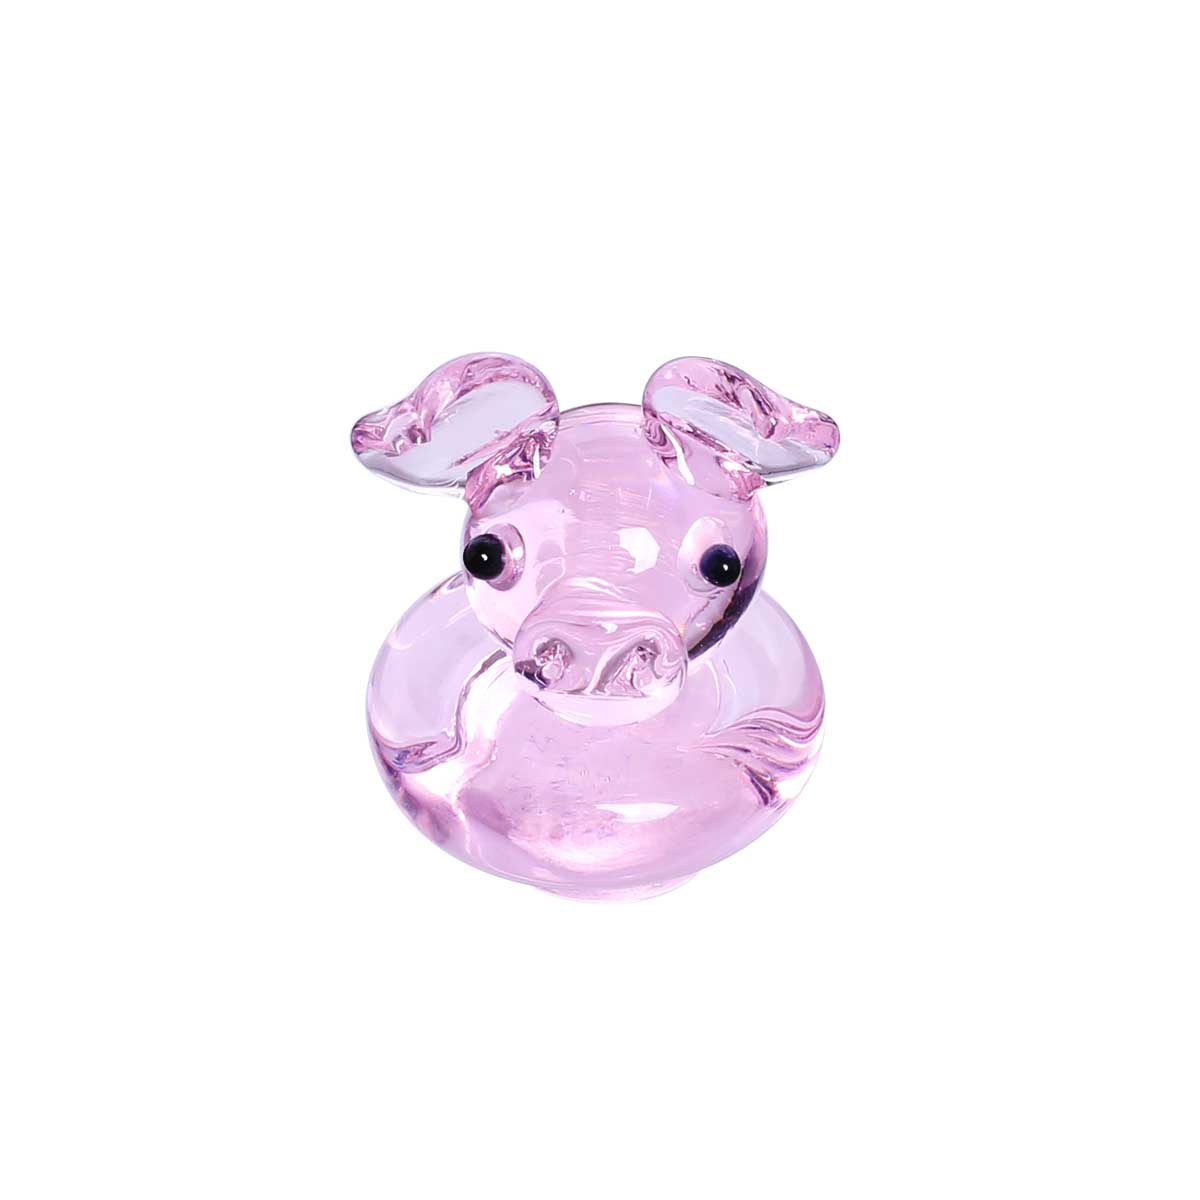 Pig Carb Cap Accessories